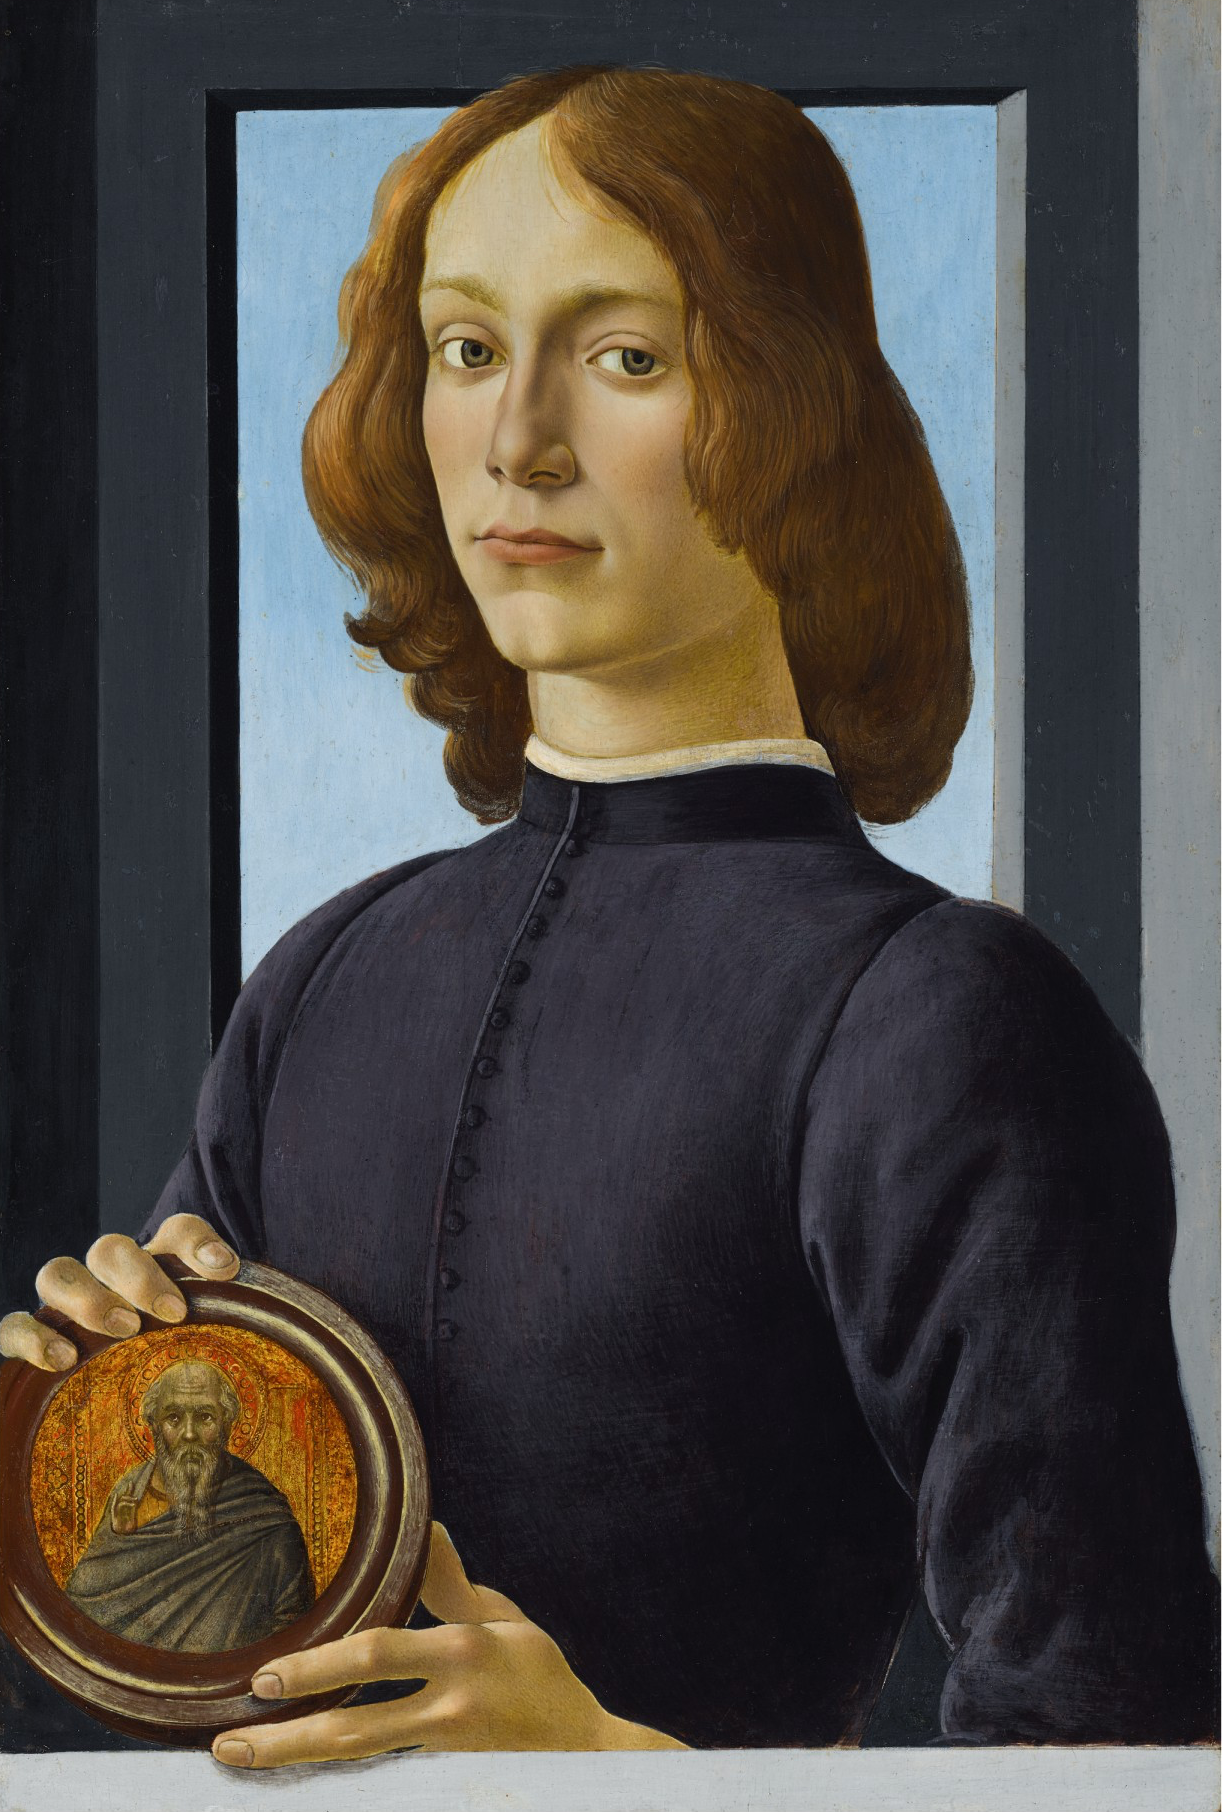 拿着圆像章的年轻男人 by 桑德罗 波提切利 - c. 1470-1480 - 58.4 x 39.4 cm 